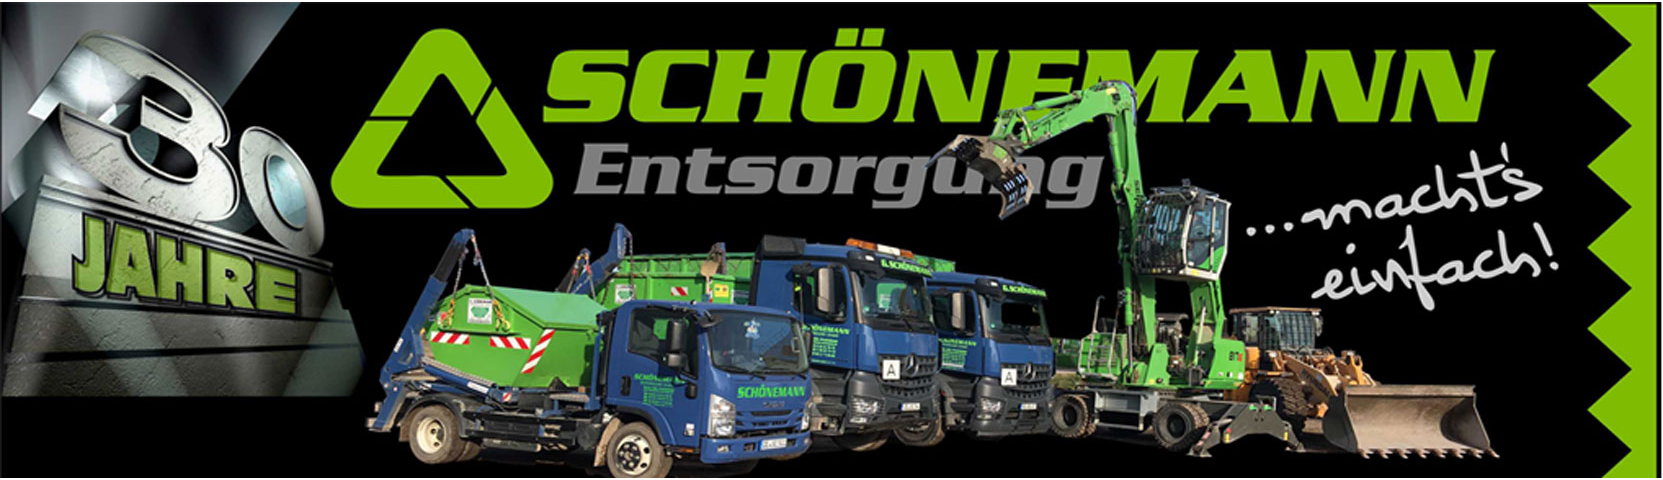 Bilder G. Schönemann Entsorgung GmbH